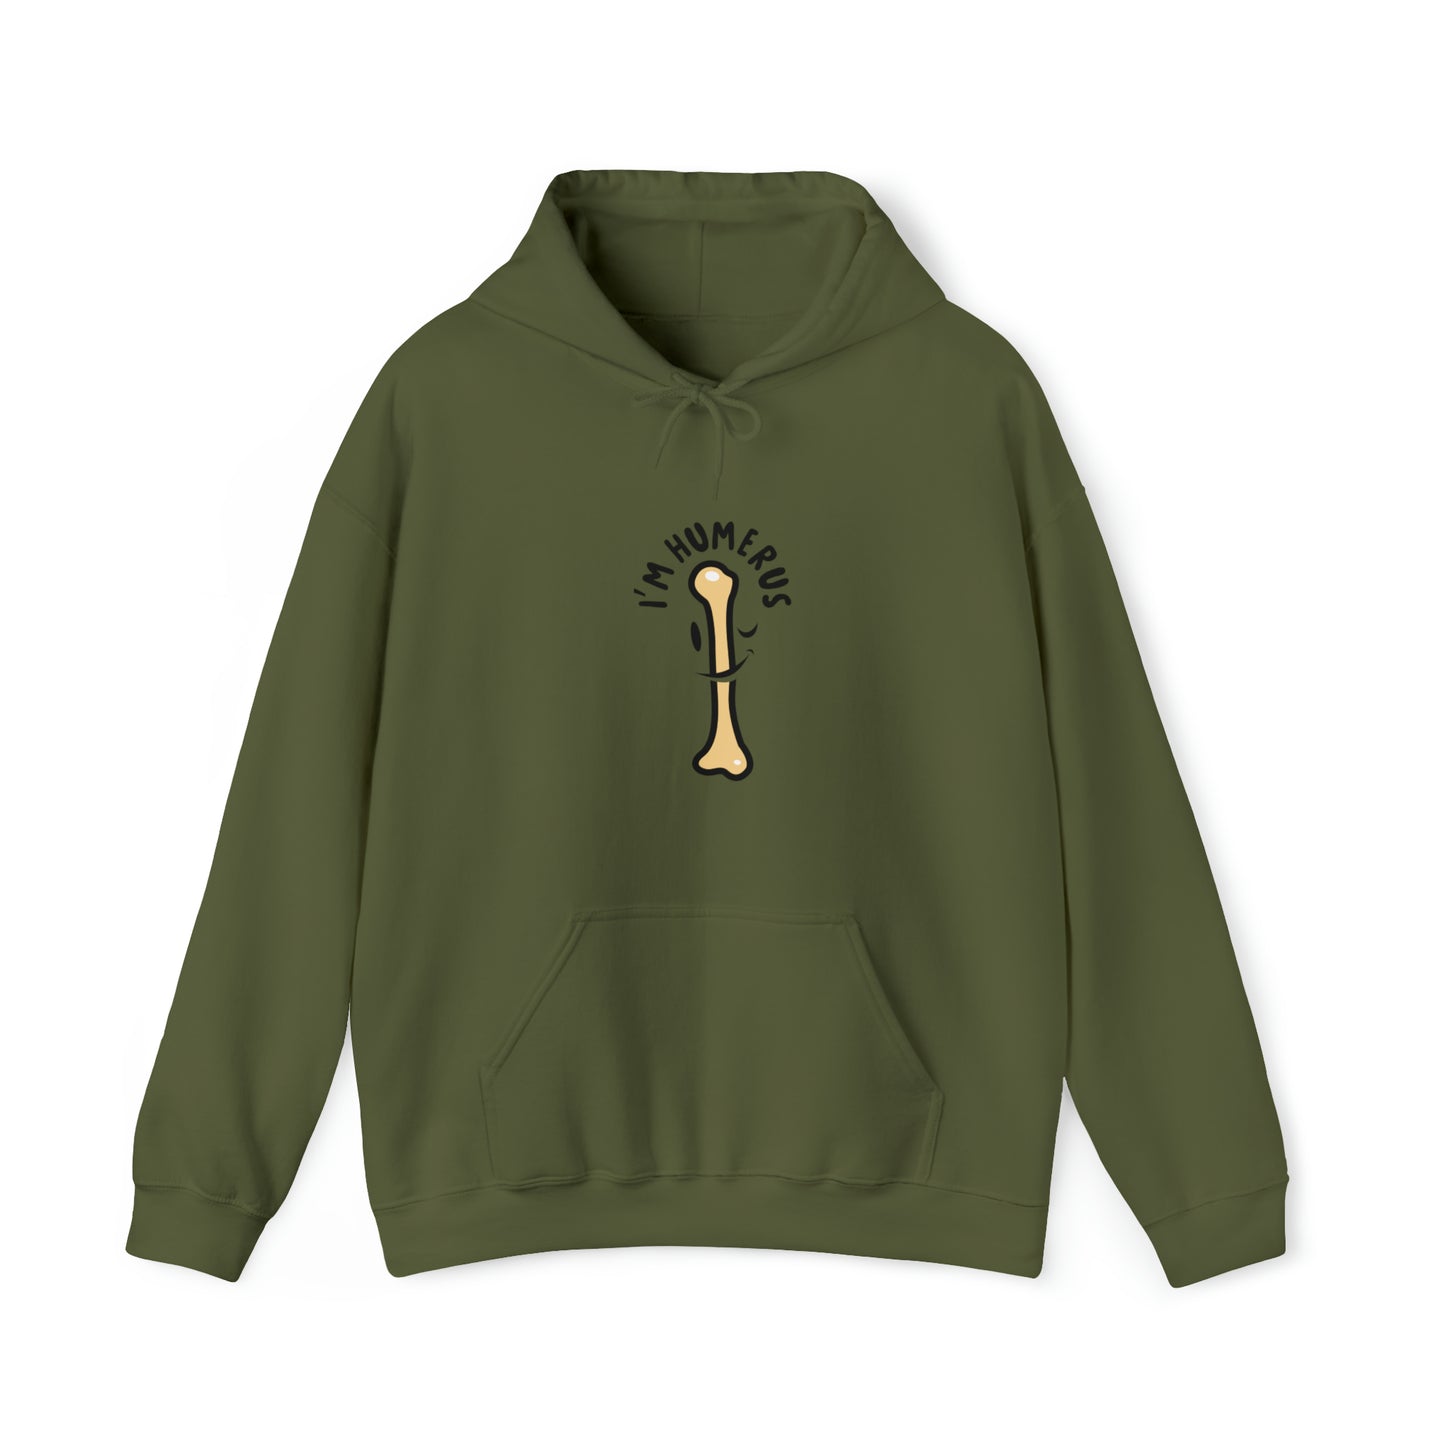 Custom Parody Hooded Sweatshirt, I'm humerus design